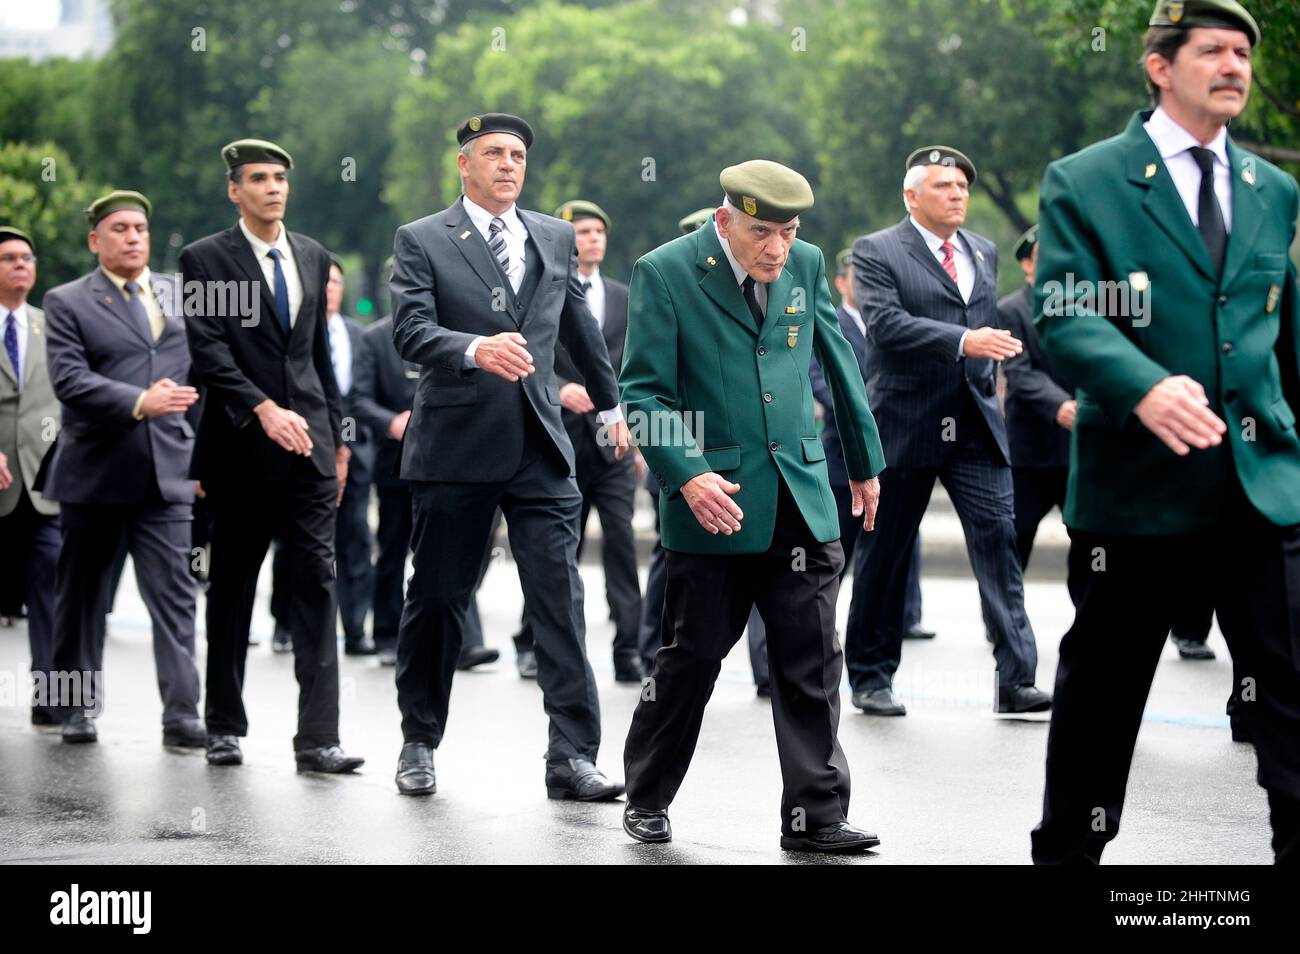 Militärveteranen Parade am Unabhängigkeitstag. Tribut an brasilianische Streitkräfte, die Truppen aus dem Zweiten Weltkrieg zurückzogen, marschierten auf der Straße Stockfoto